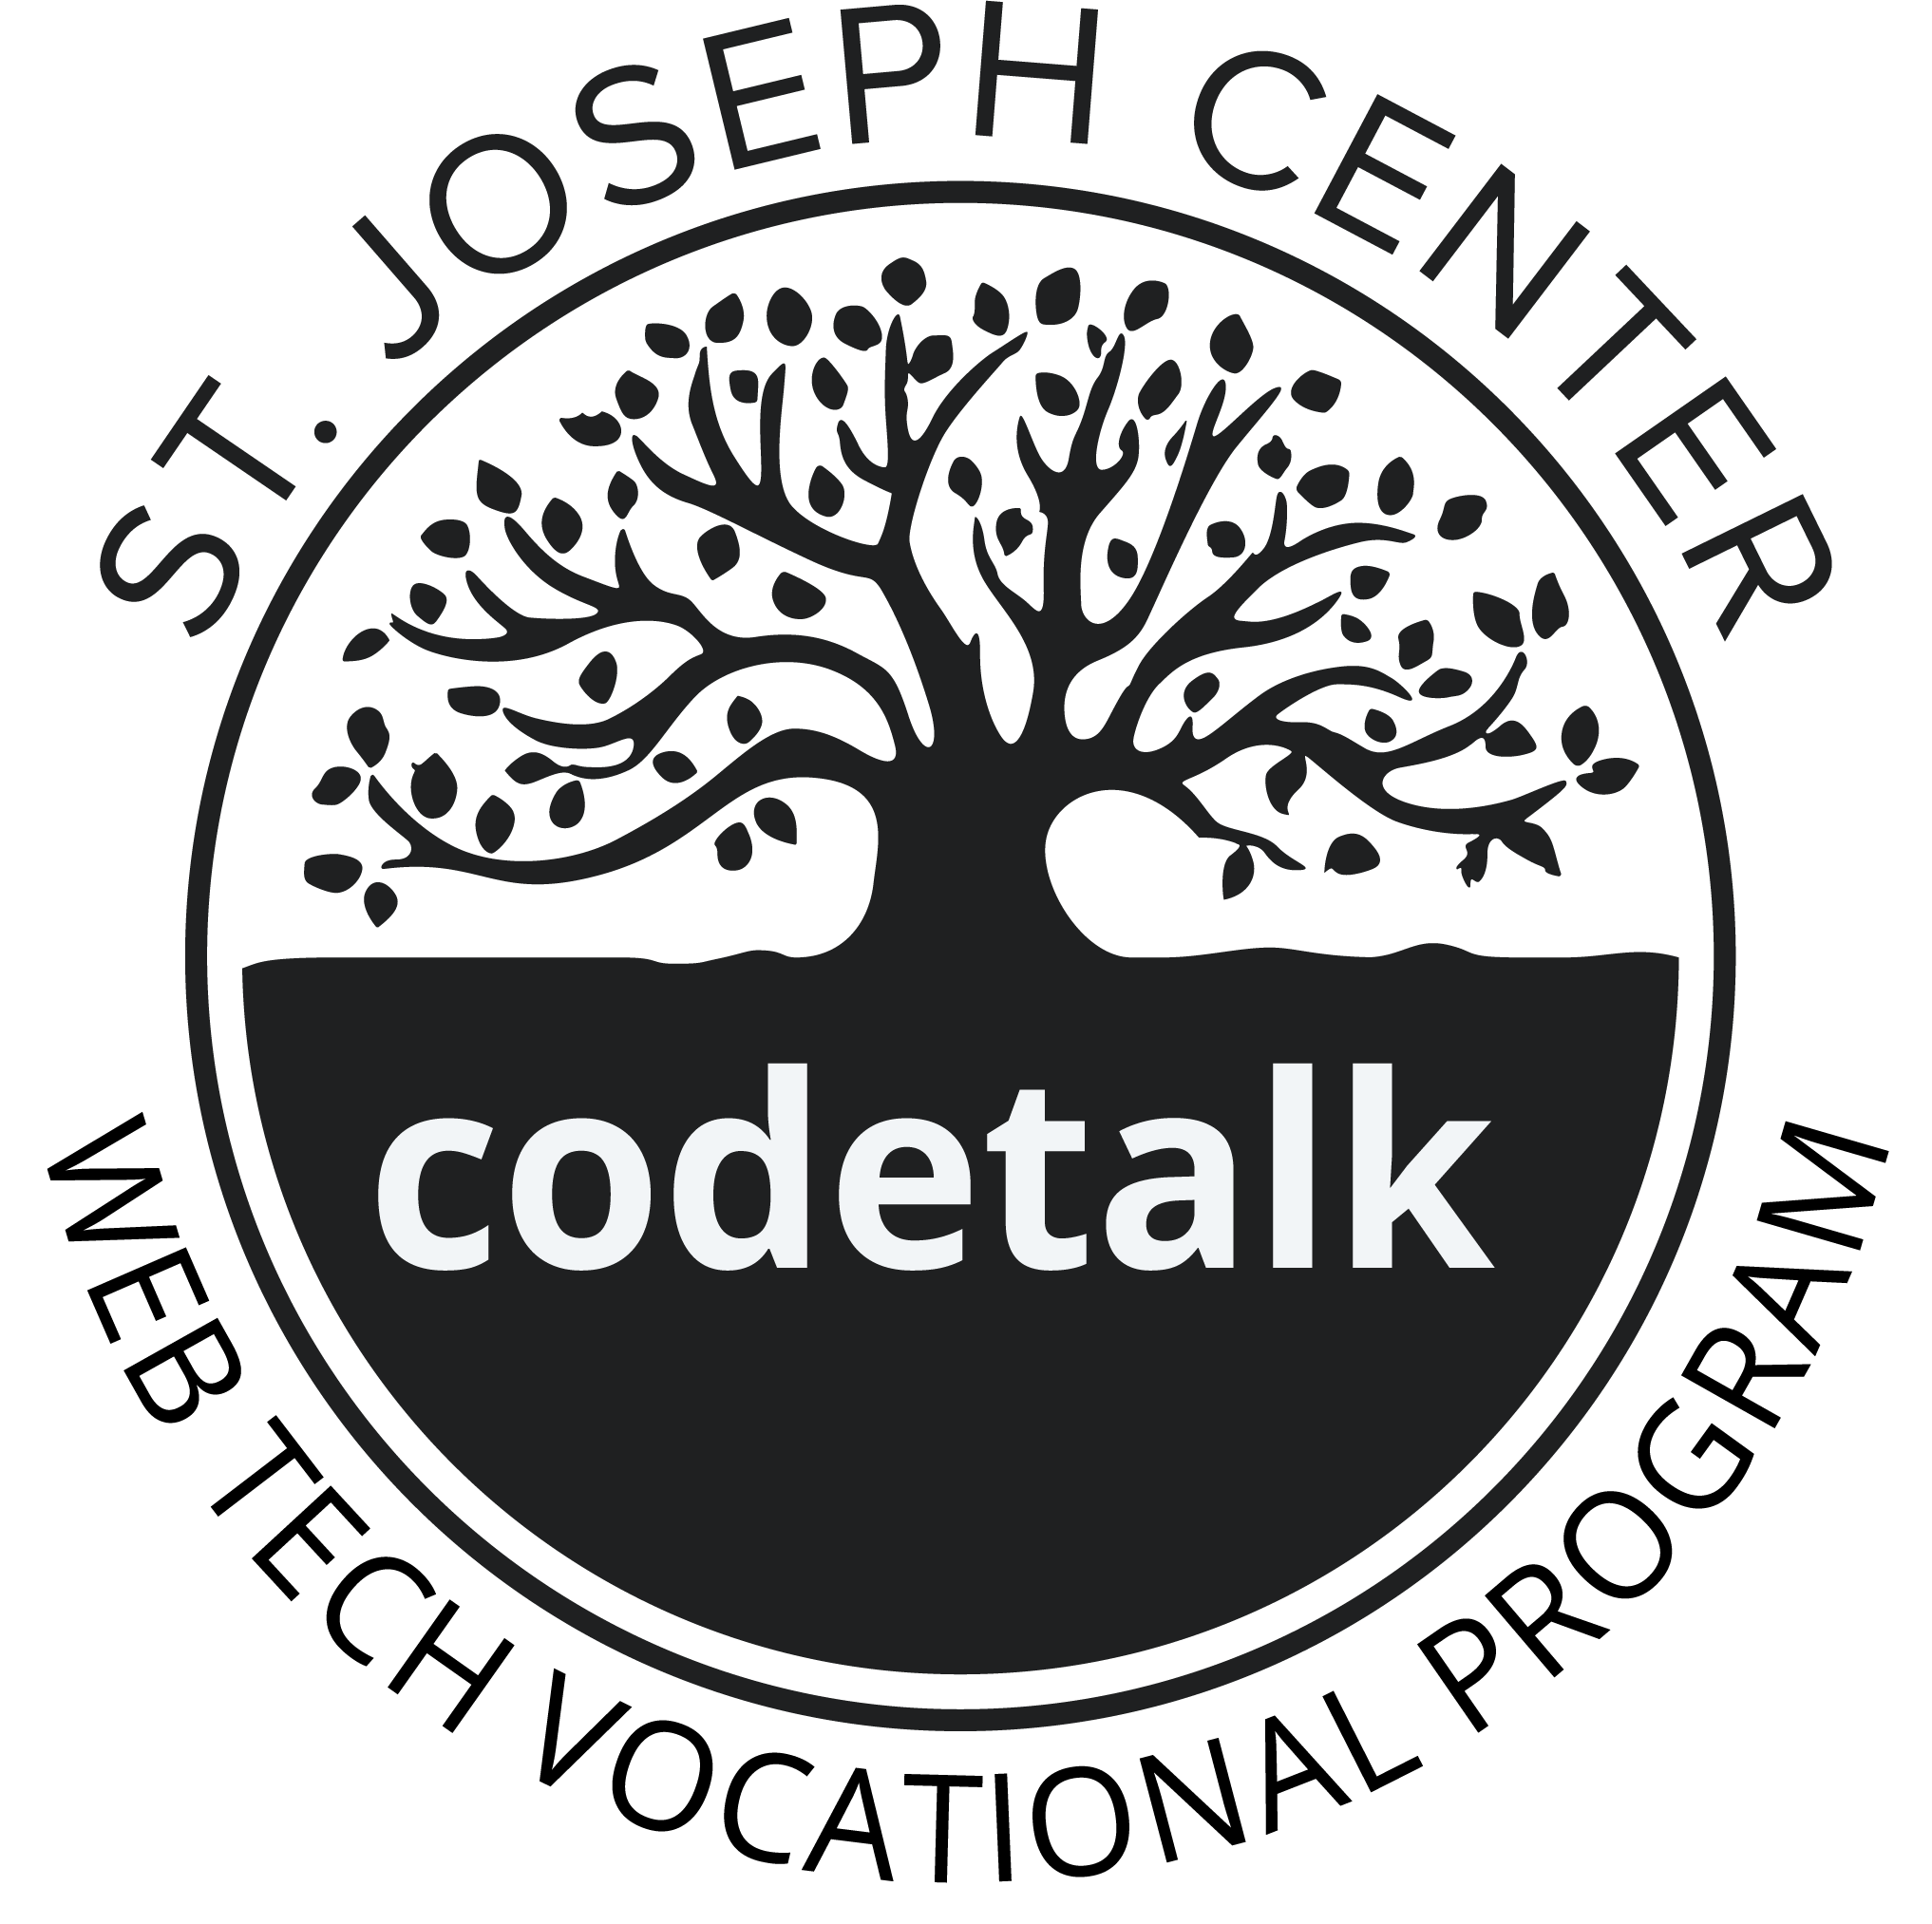 St. Joseph Center - Codetalk